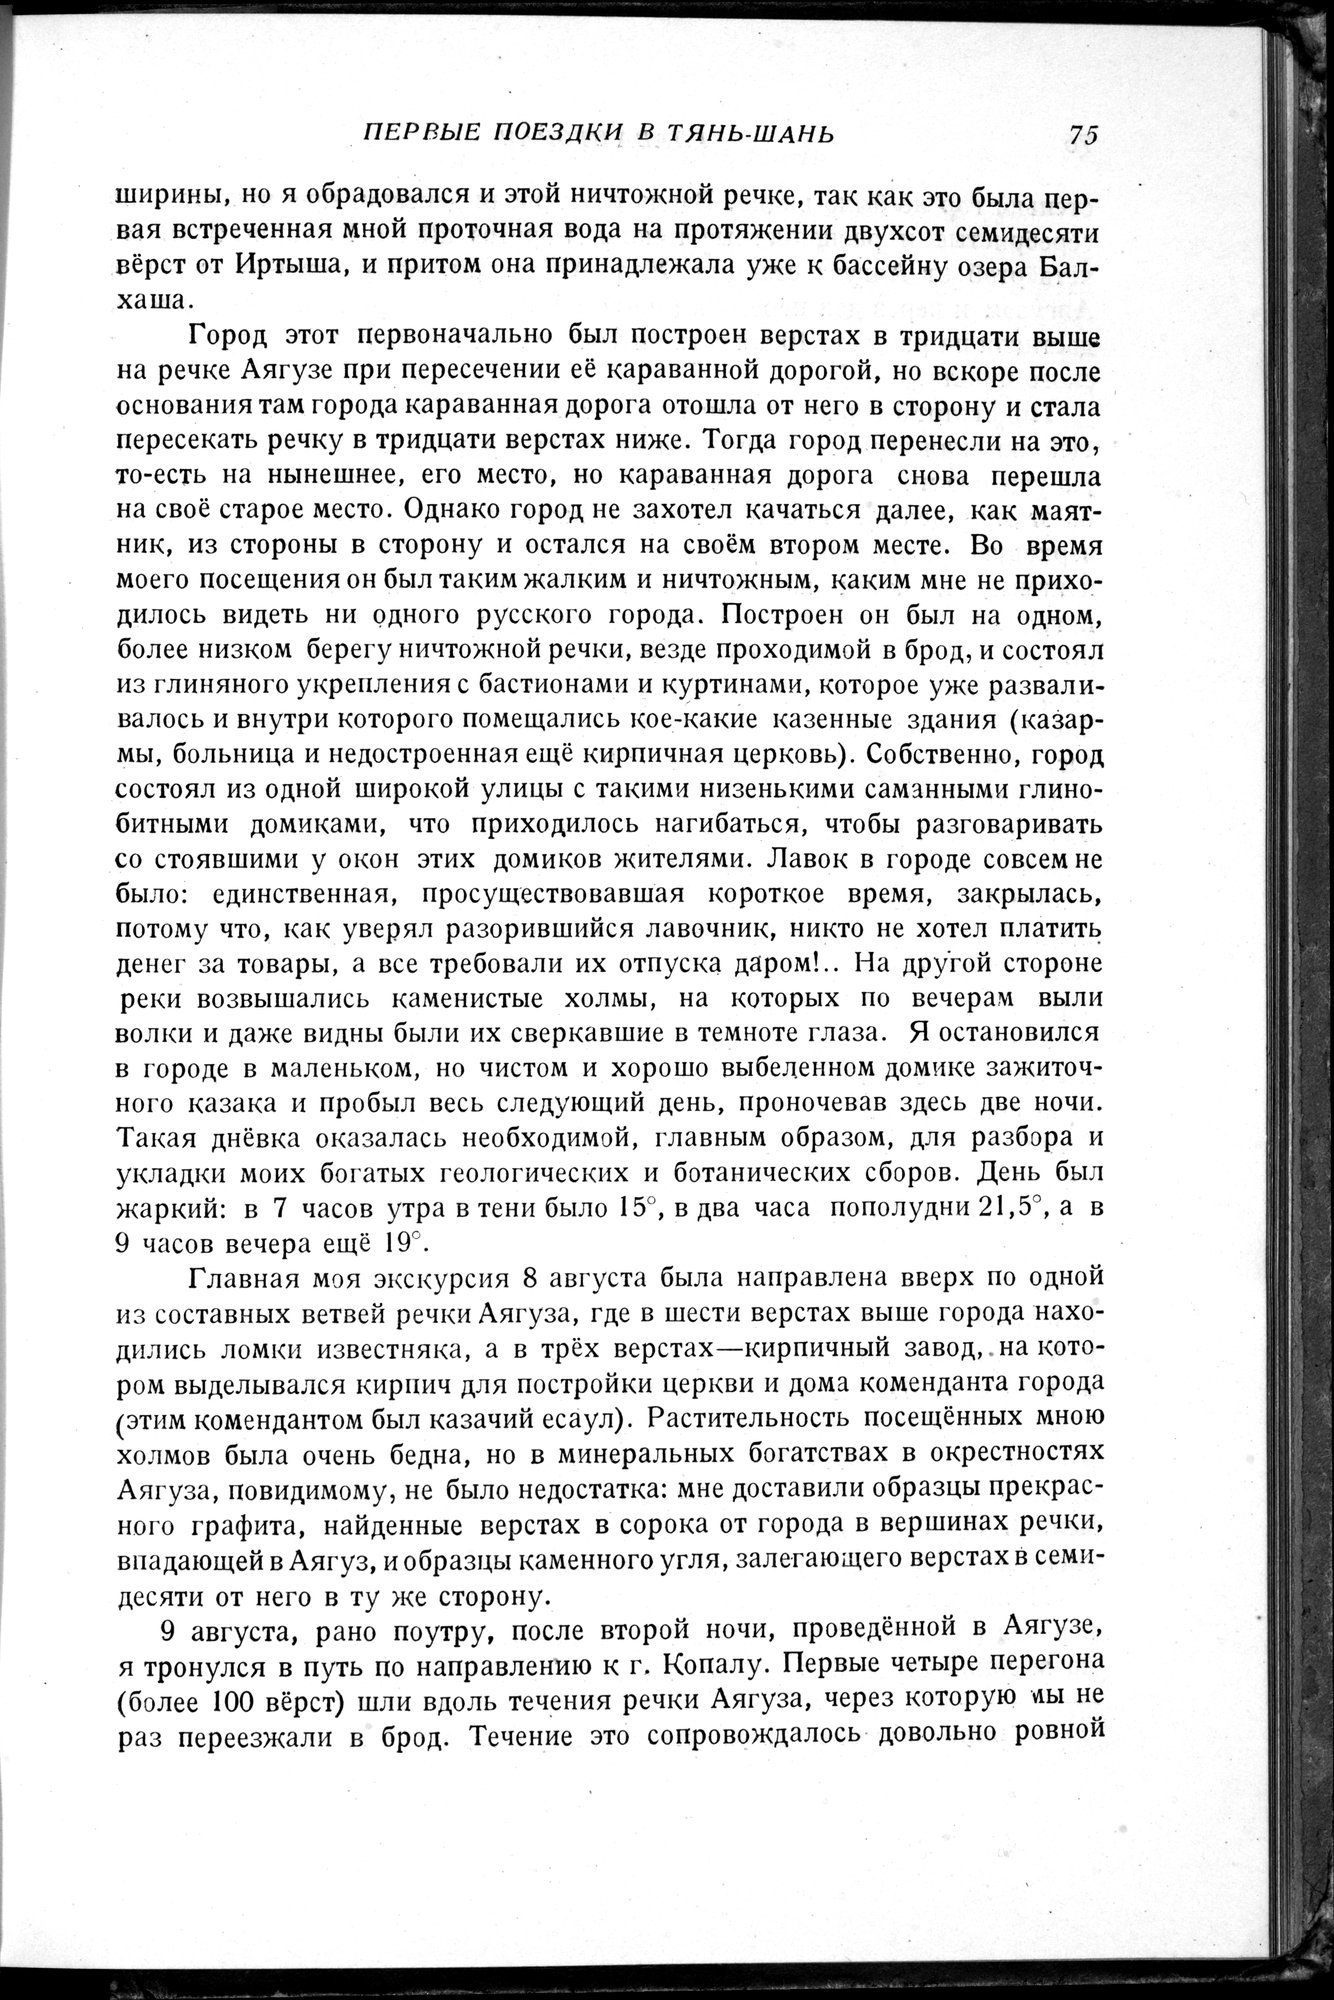 Puteshestvie v Tian' - Shan' v 1856-1857 godakh : vol.1 / 83 ページ（白黒高解像度画像）